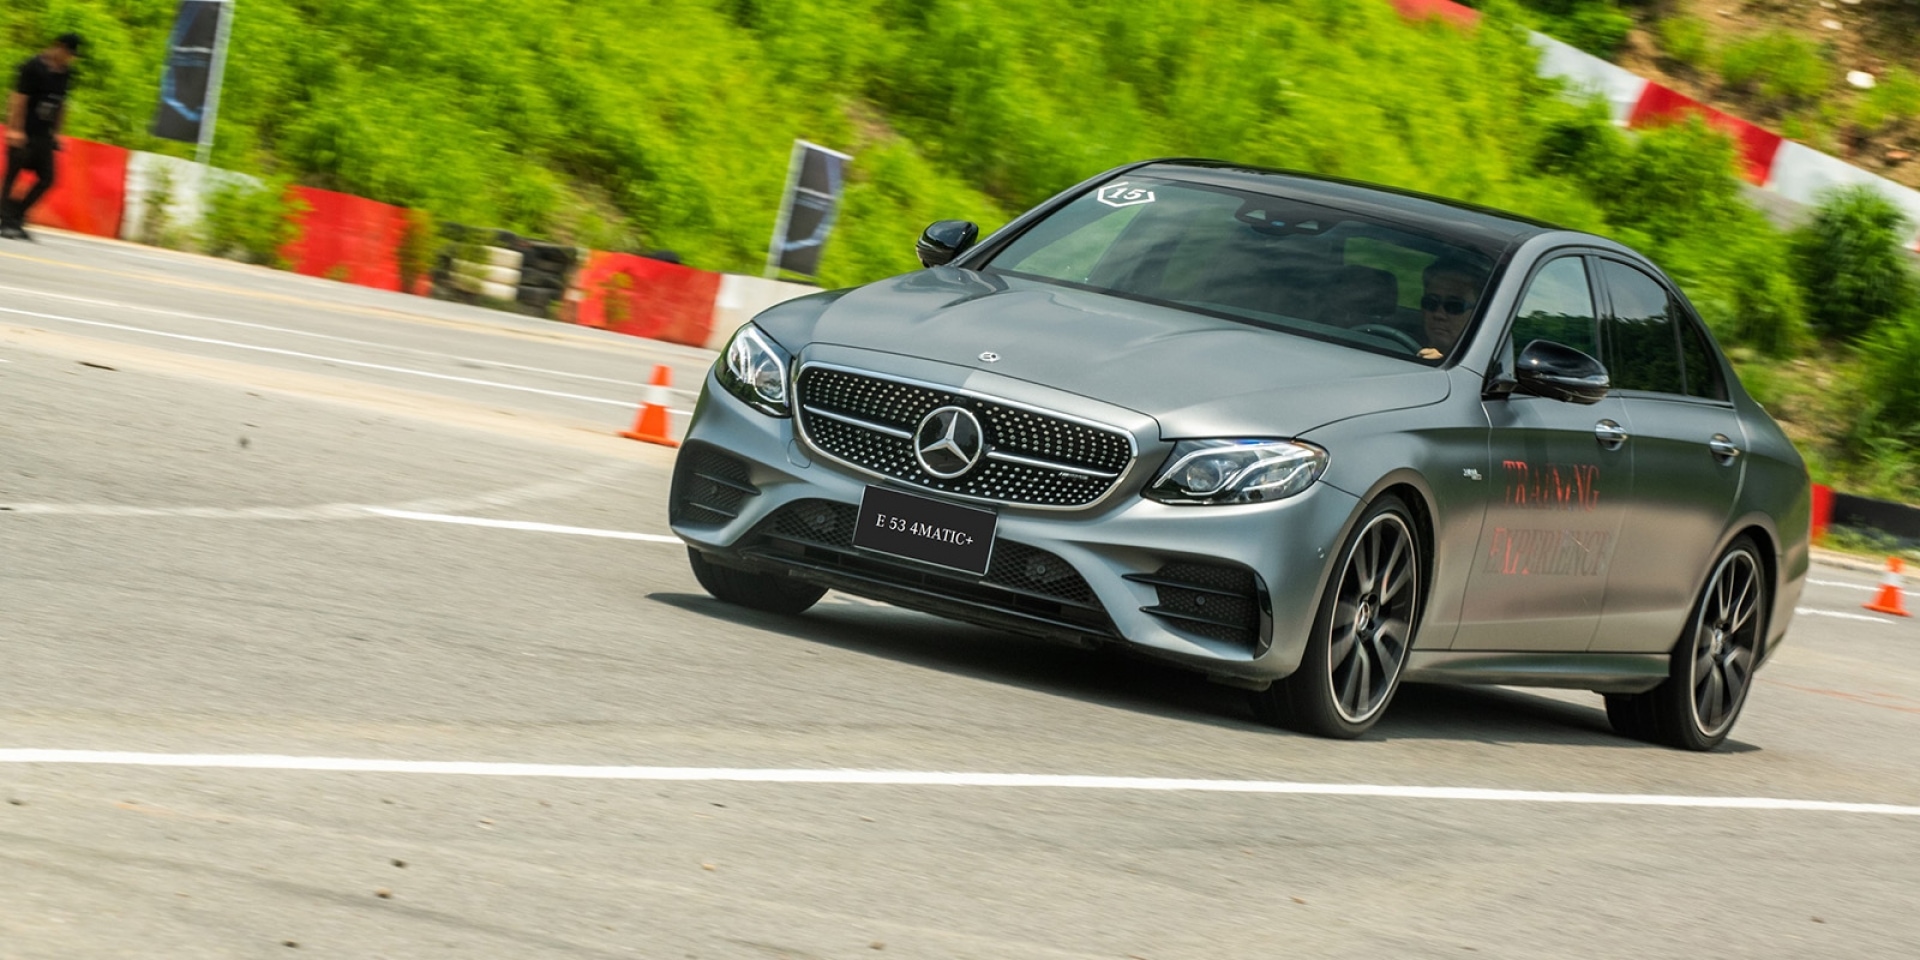 官方新聞稿。全新 Mercedes-AMG E 53 4MATIC+ 四門房車、雙門跑 車以 435 匹的強勁動力詮釋最新 EQ Boost 動力科技